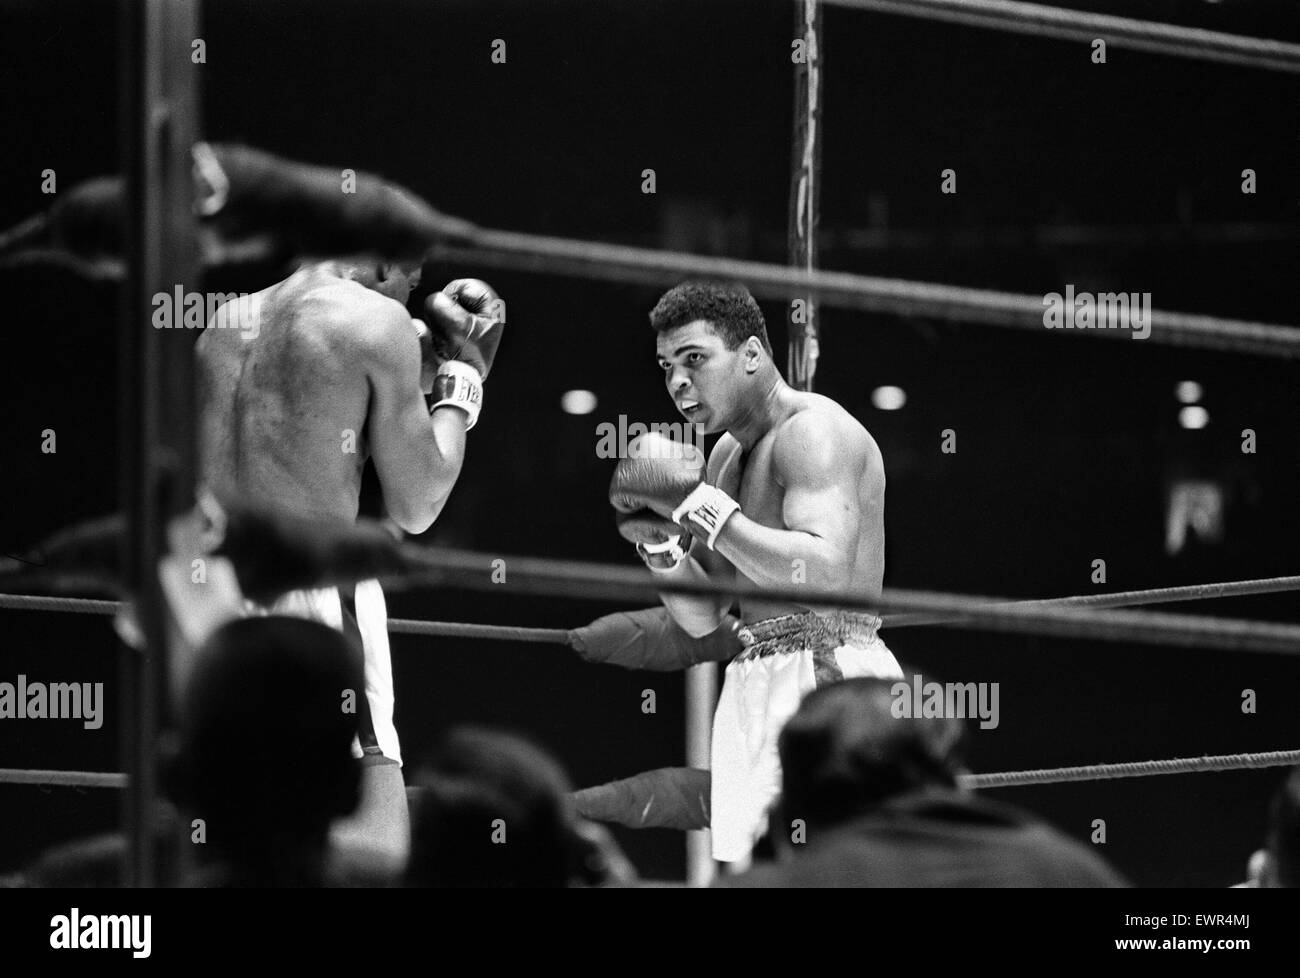 Muhammad Ali und Ernie Terrell getroffen, um die Verwirrung darüber, wer der rechtmäßige Schwergewichts-Champion war zu Ende. Vor dem Kampf namens Terrell Ali immer wieder durch seinen Geburtsnamen. Später erklärte er, dass er Clay jahrelang bei den Amateuren kannte und hatte nicht Stockfoto